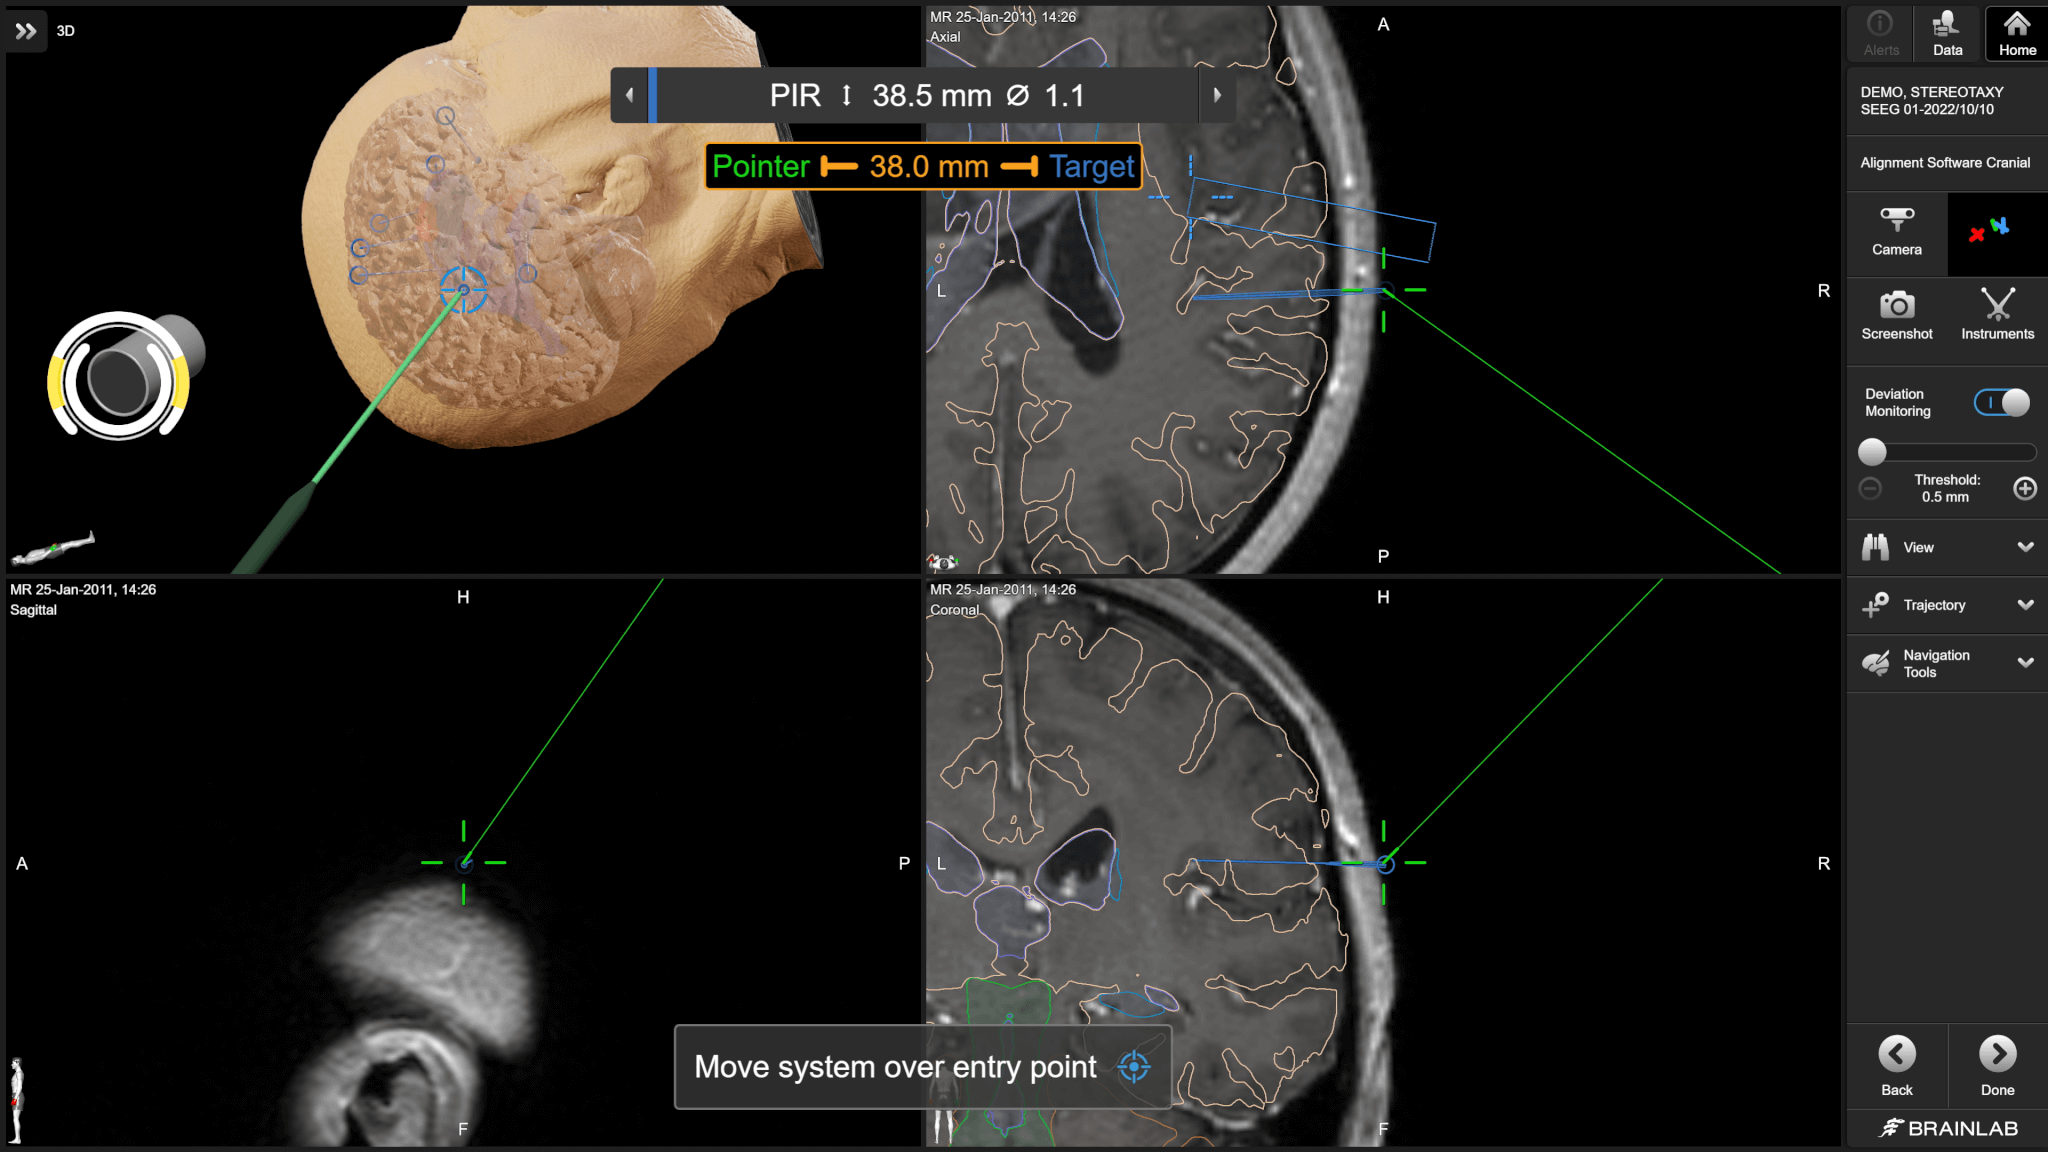 Rotation tactile des vues du microscope pour révéler davantage de détails anatomiques